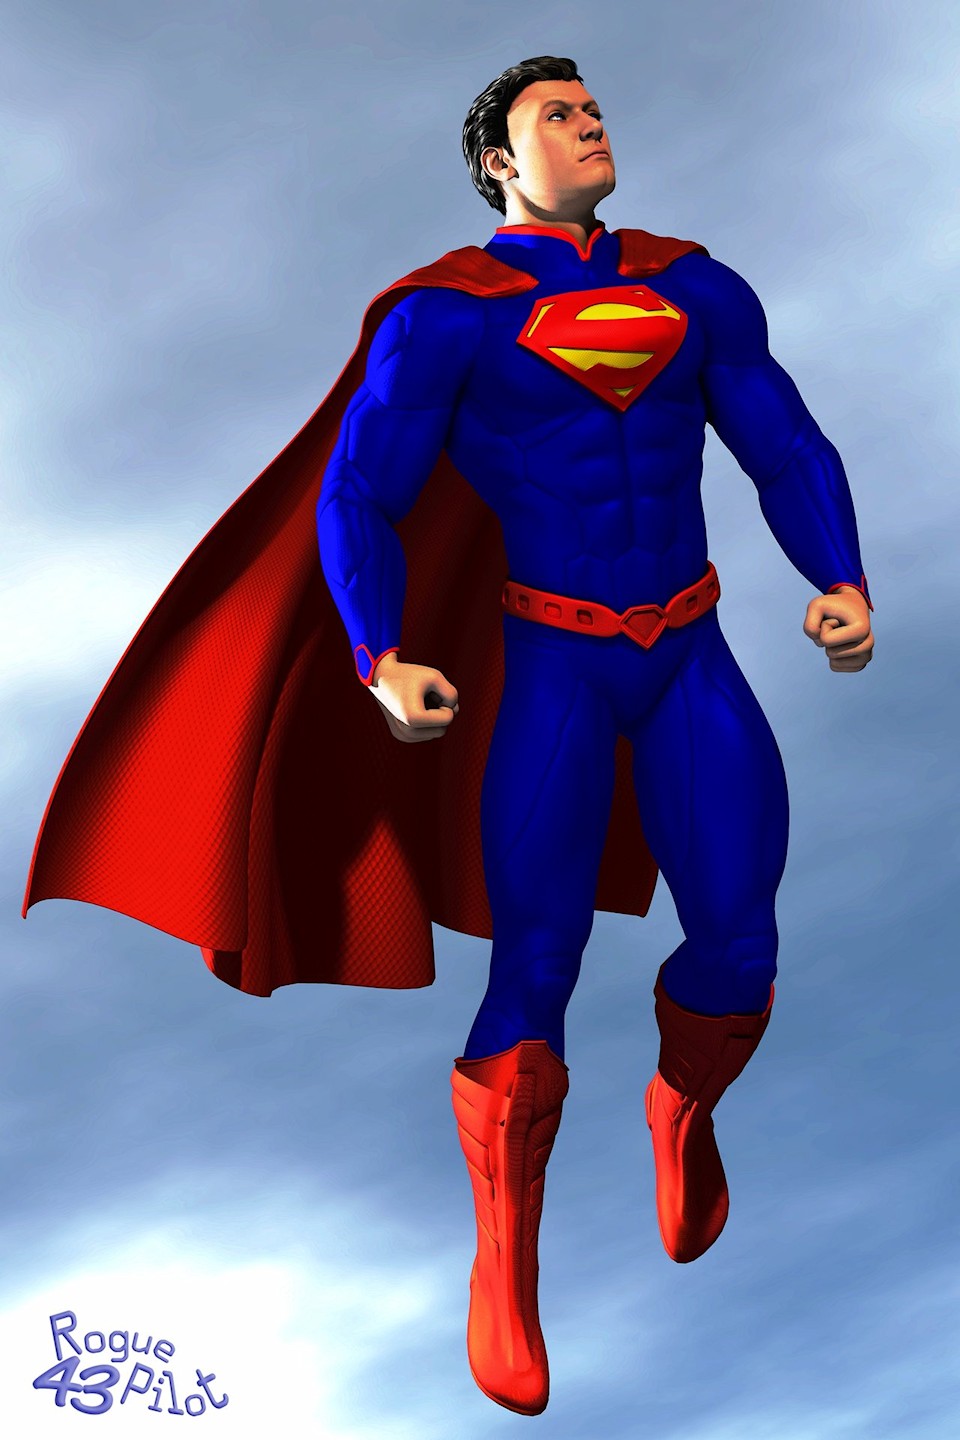 Superman New52 Suit. size: 44.9 MB. 